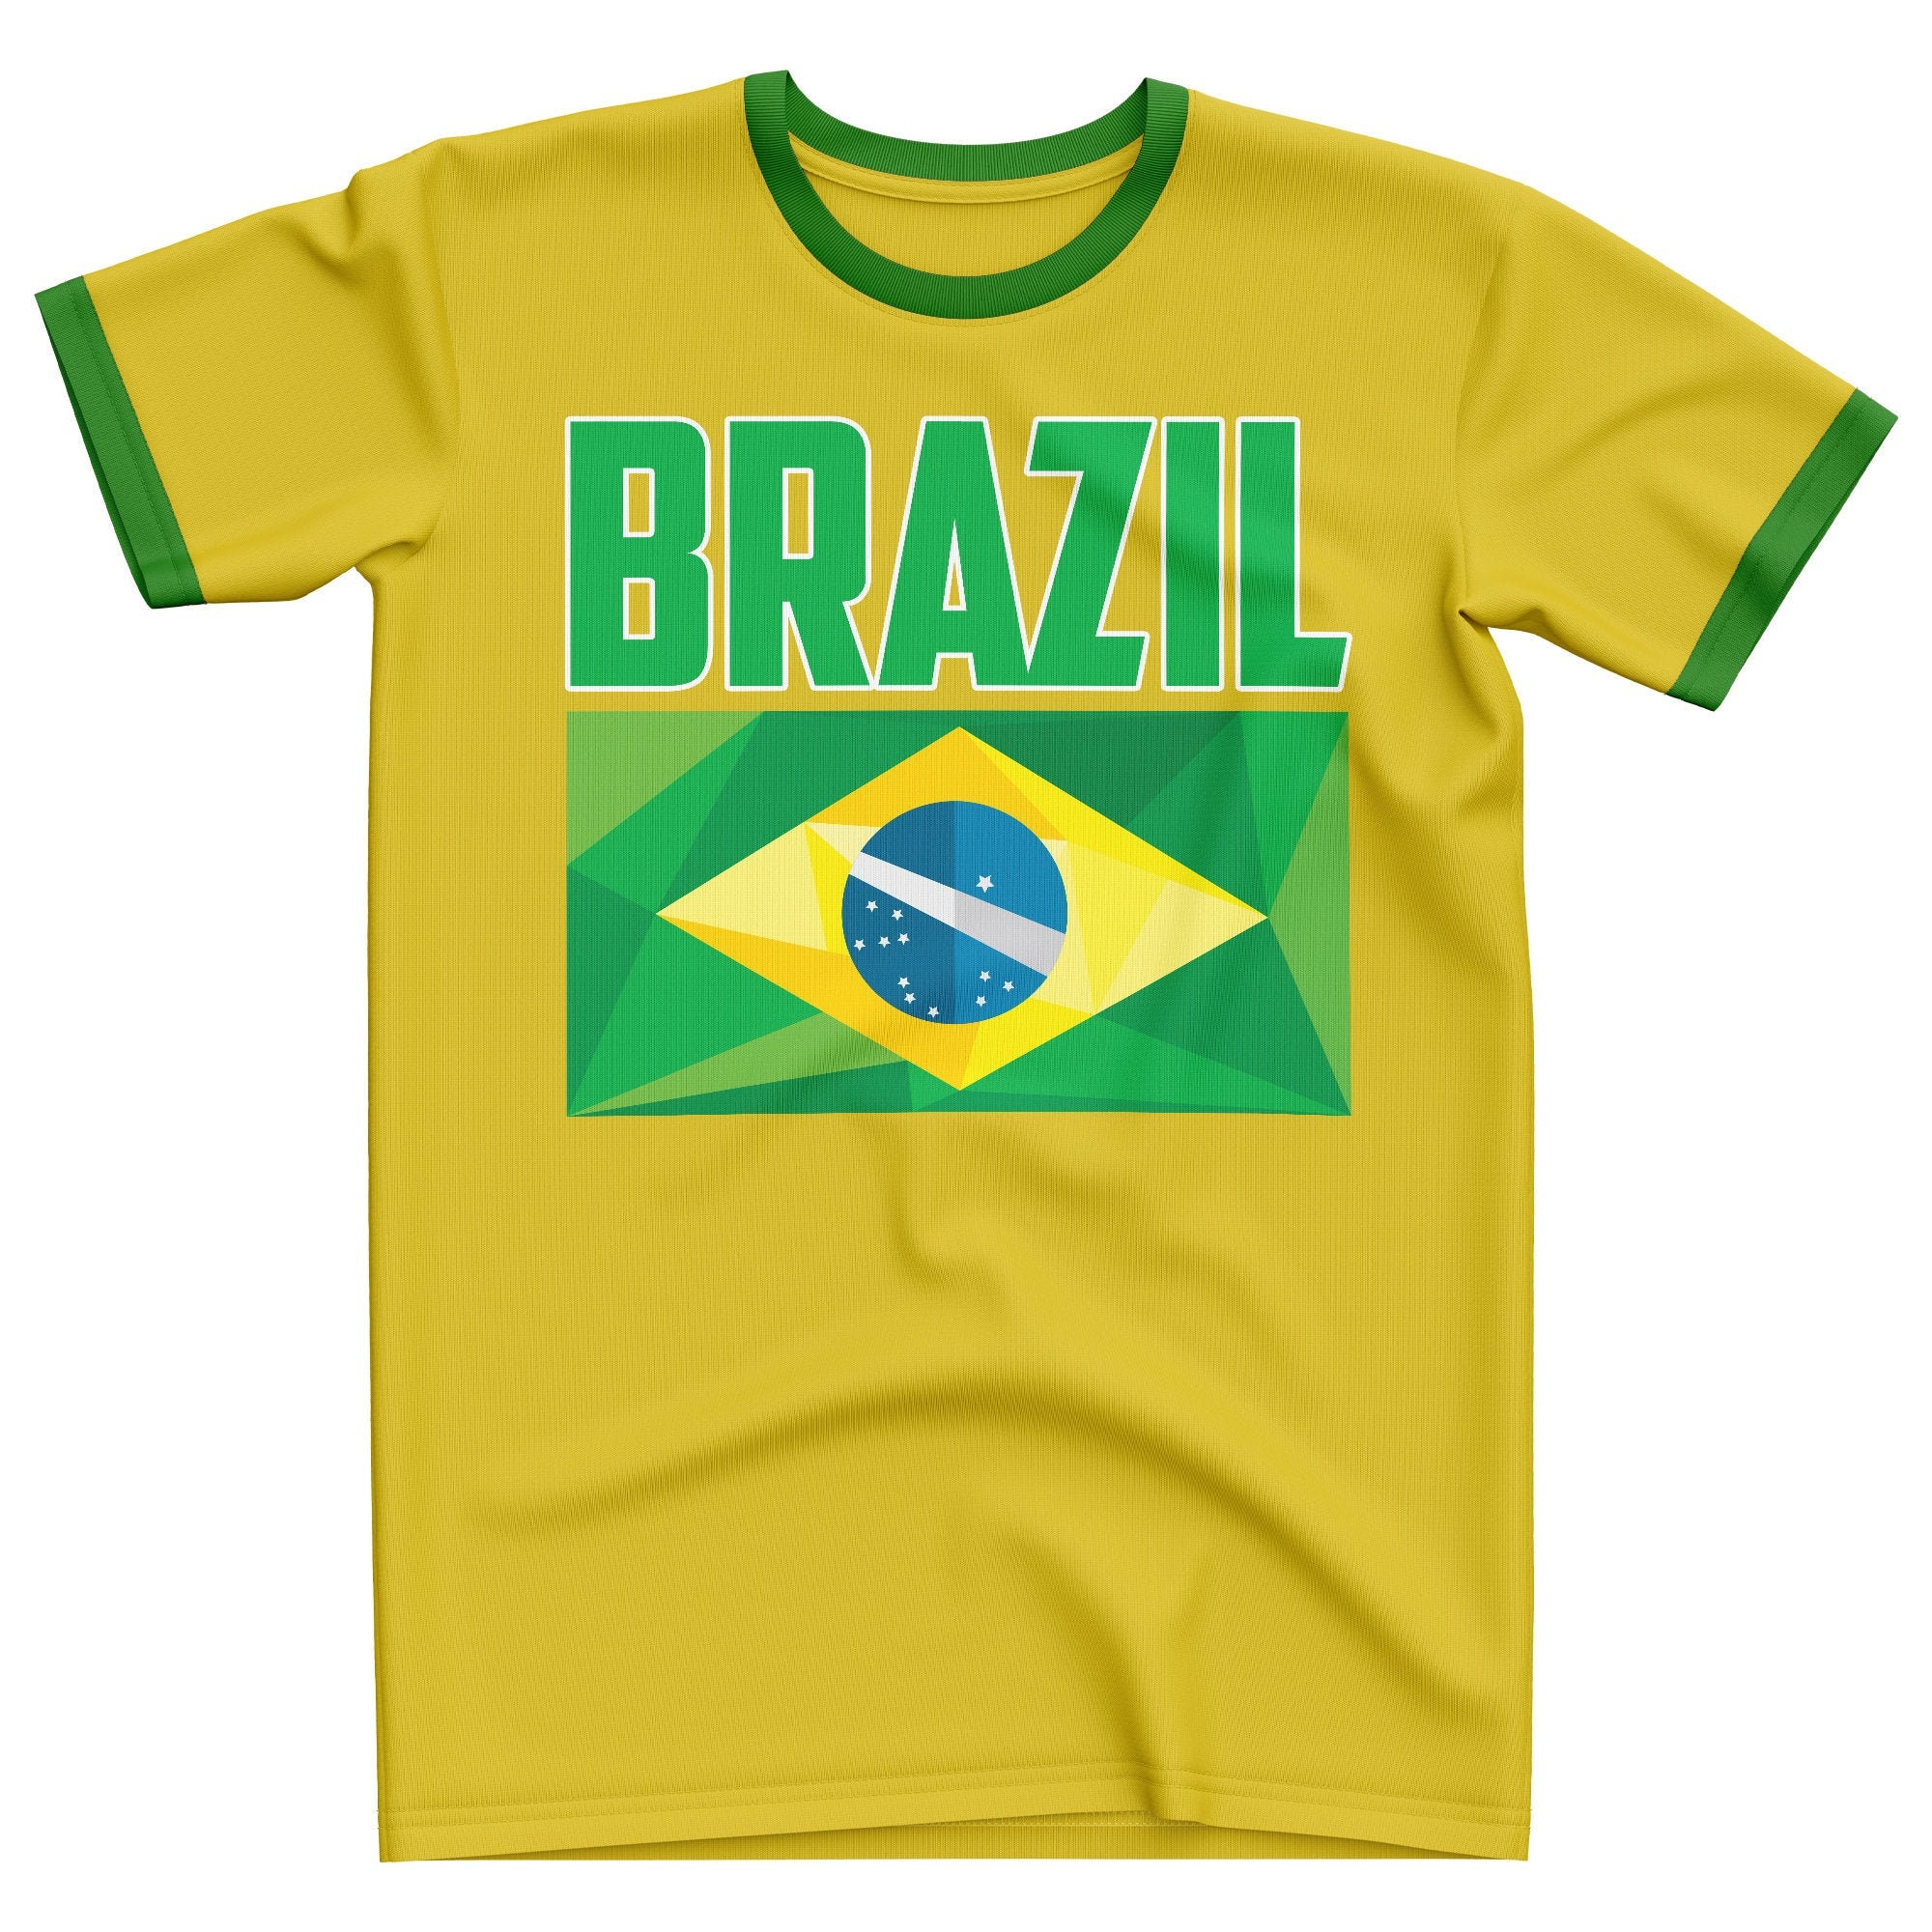 Brazil T Shirt, Brazil Tshirt, Ringer Gold Green Brazil Supporters